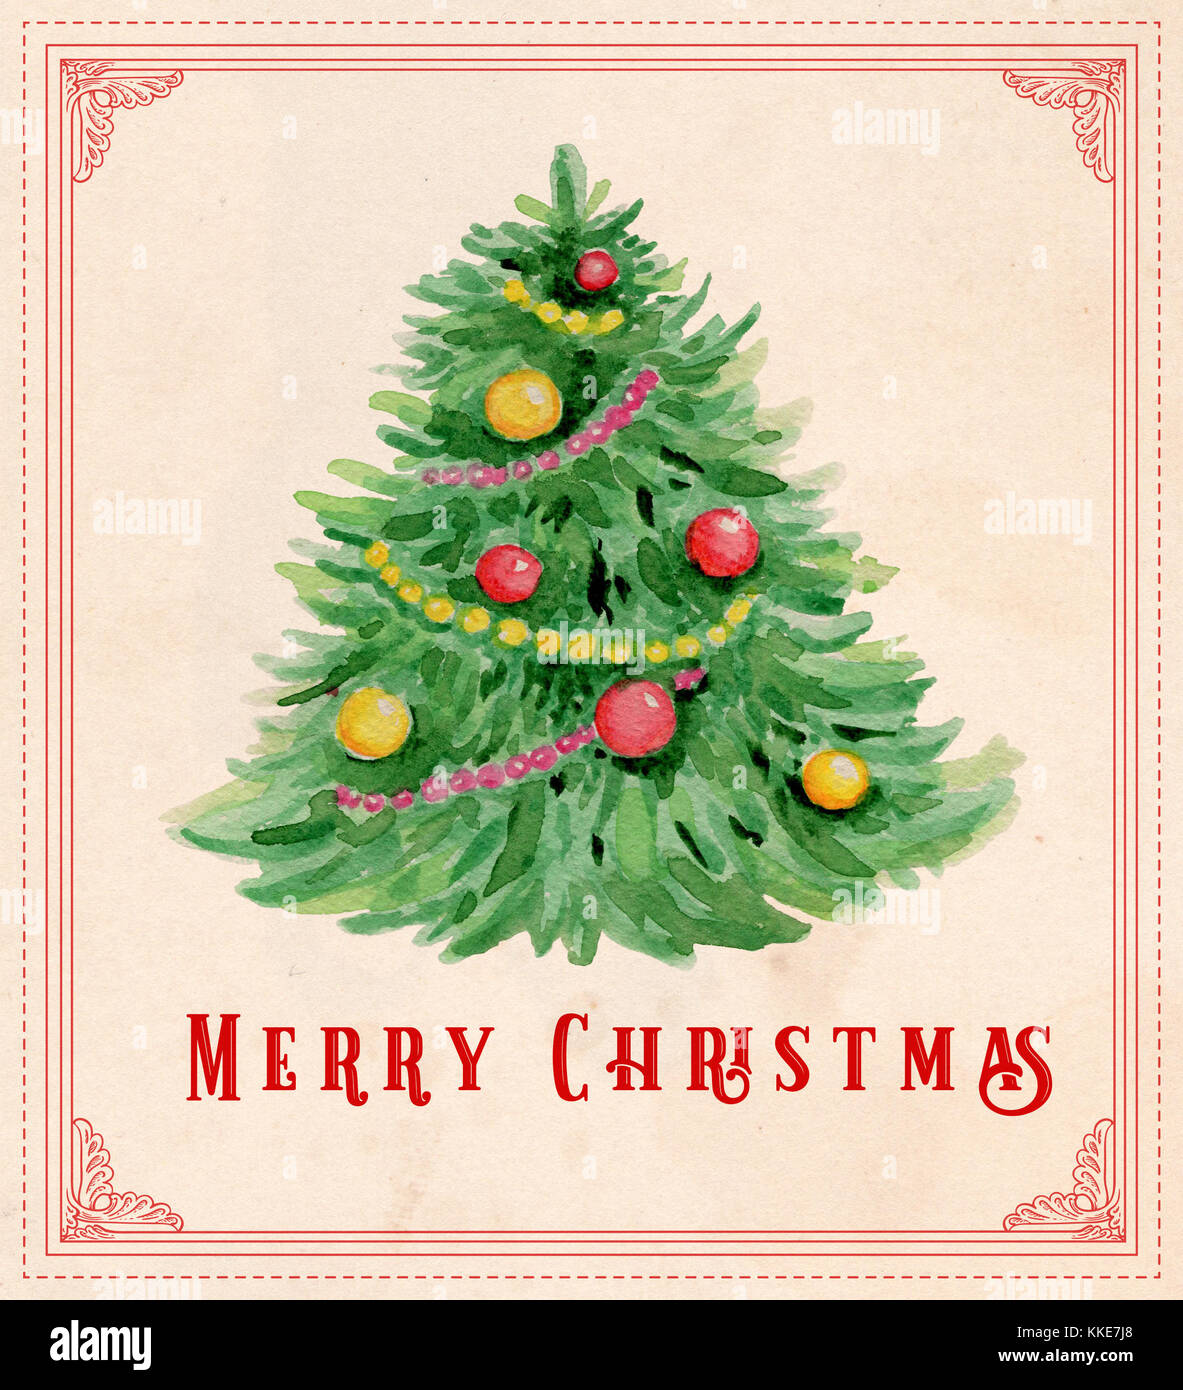 Hand drawn vintage carte de vœux de Noël à l'aquarelle. vert sapin et décorations Banque D'Images